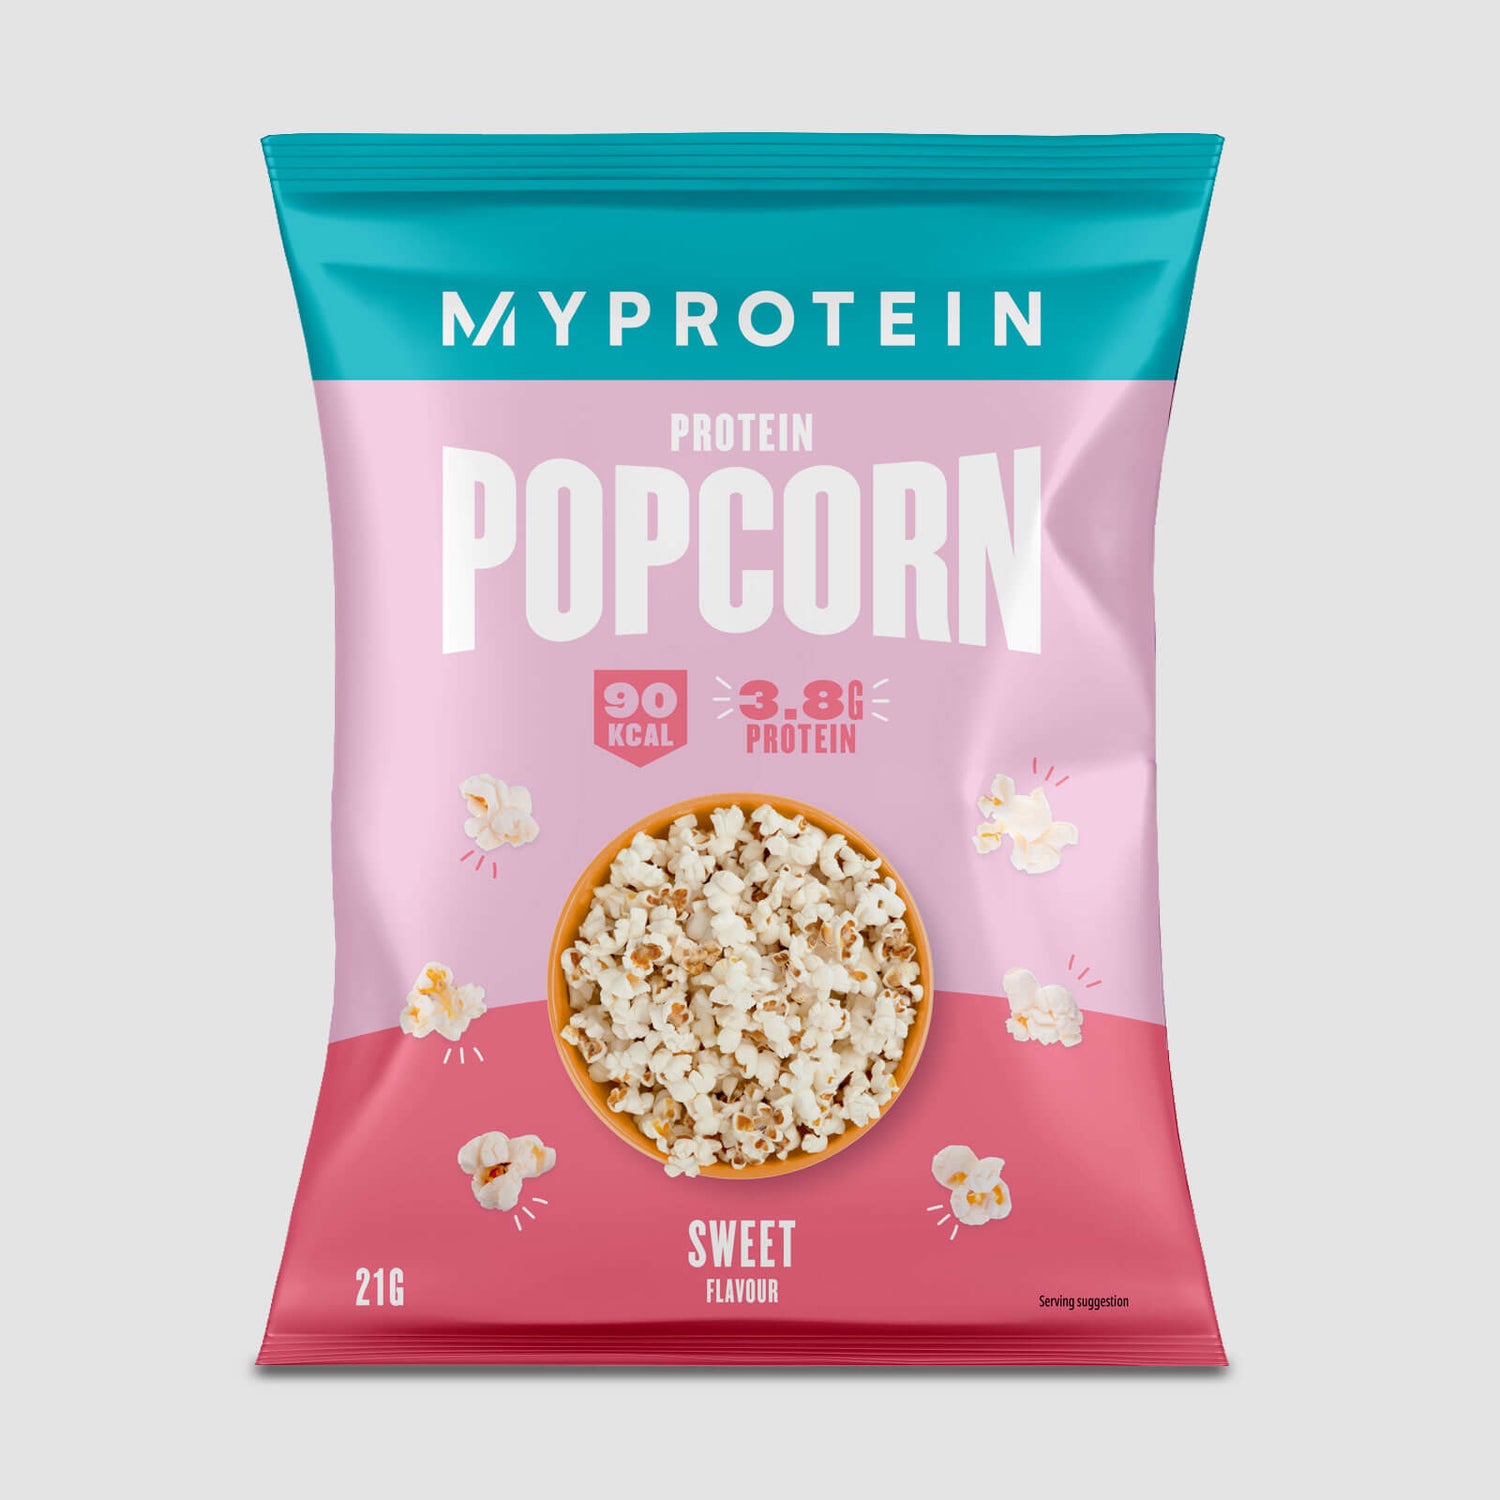 Myprotein Popcorn (Sample) - 21g - Sweet